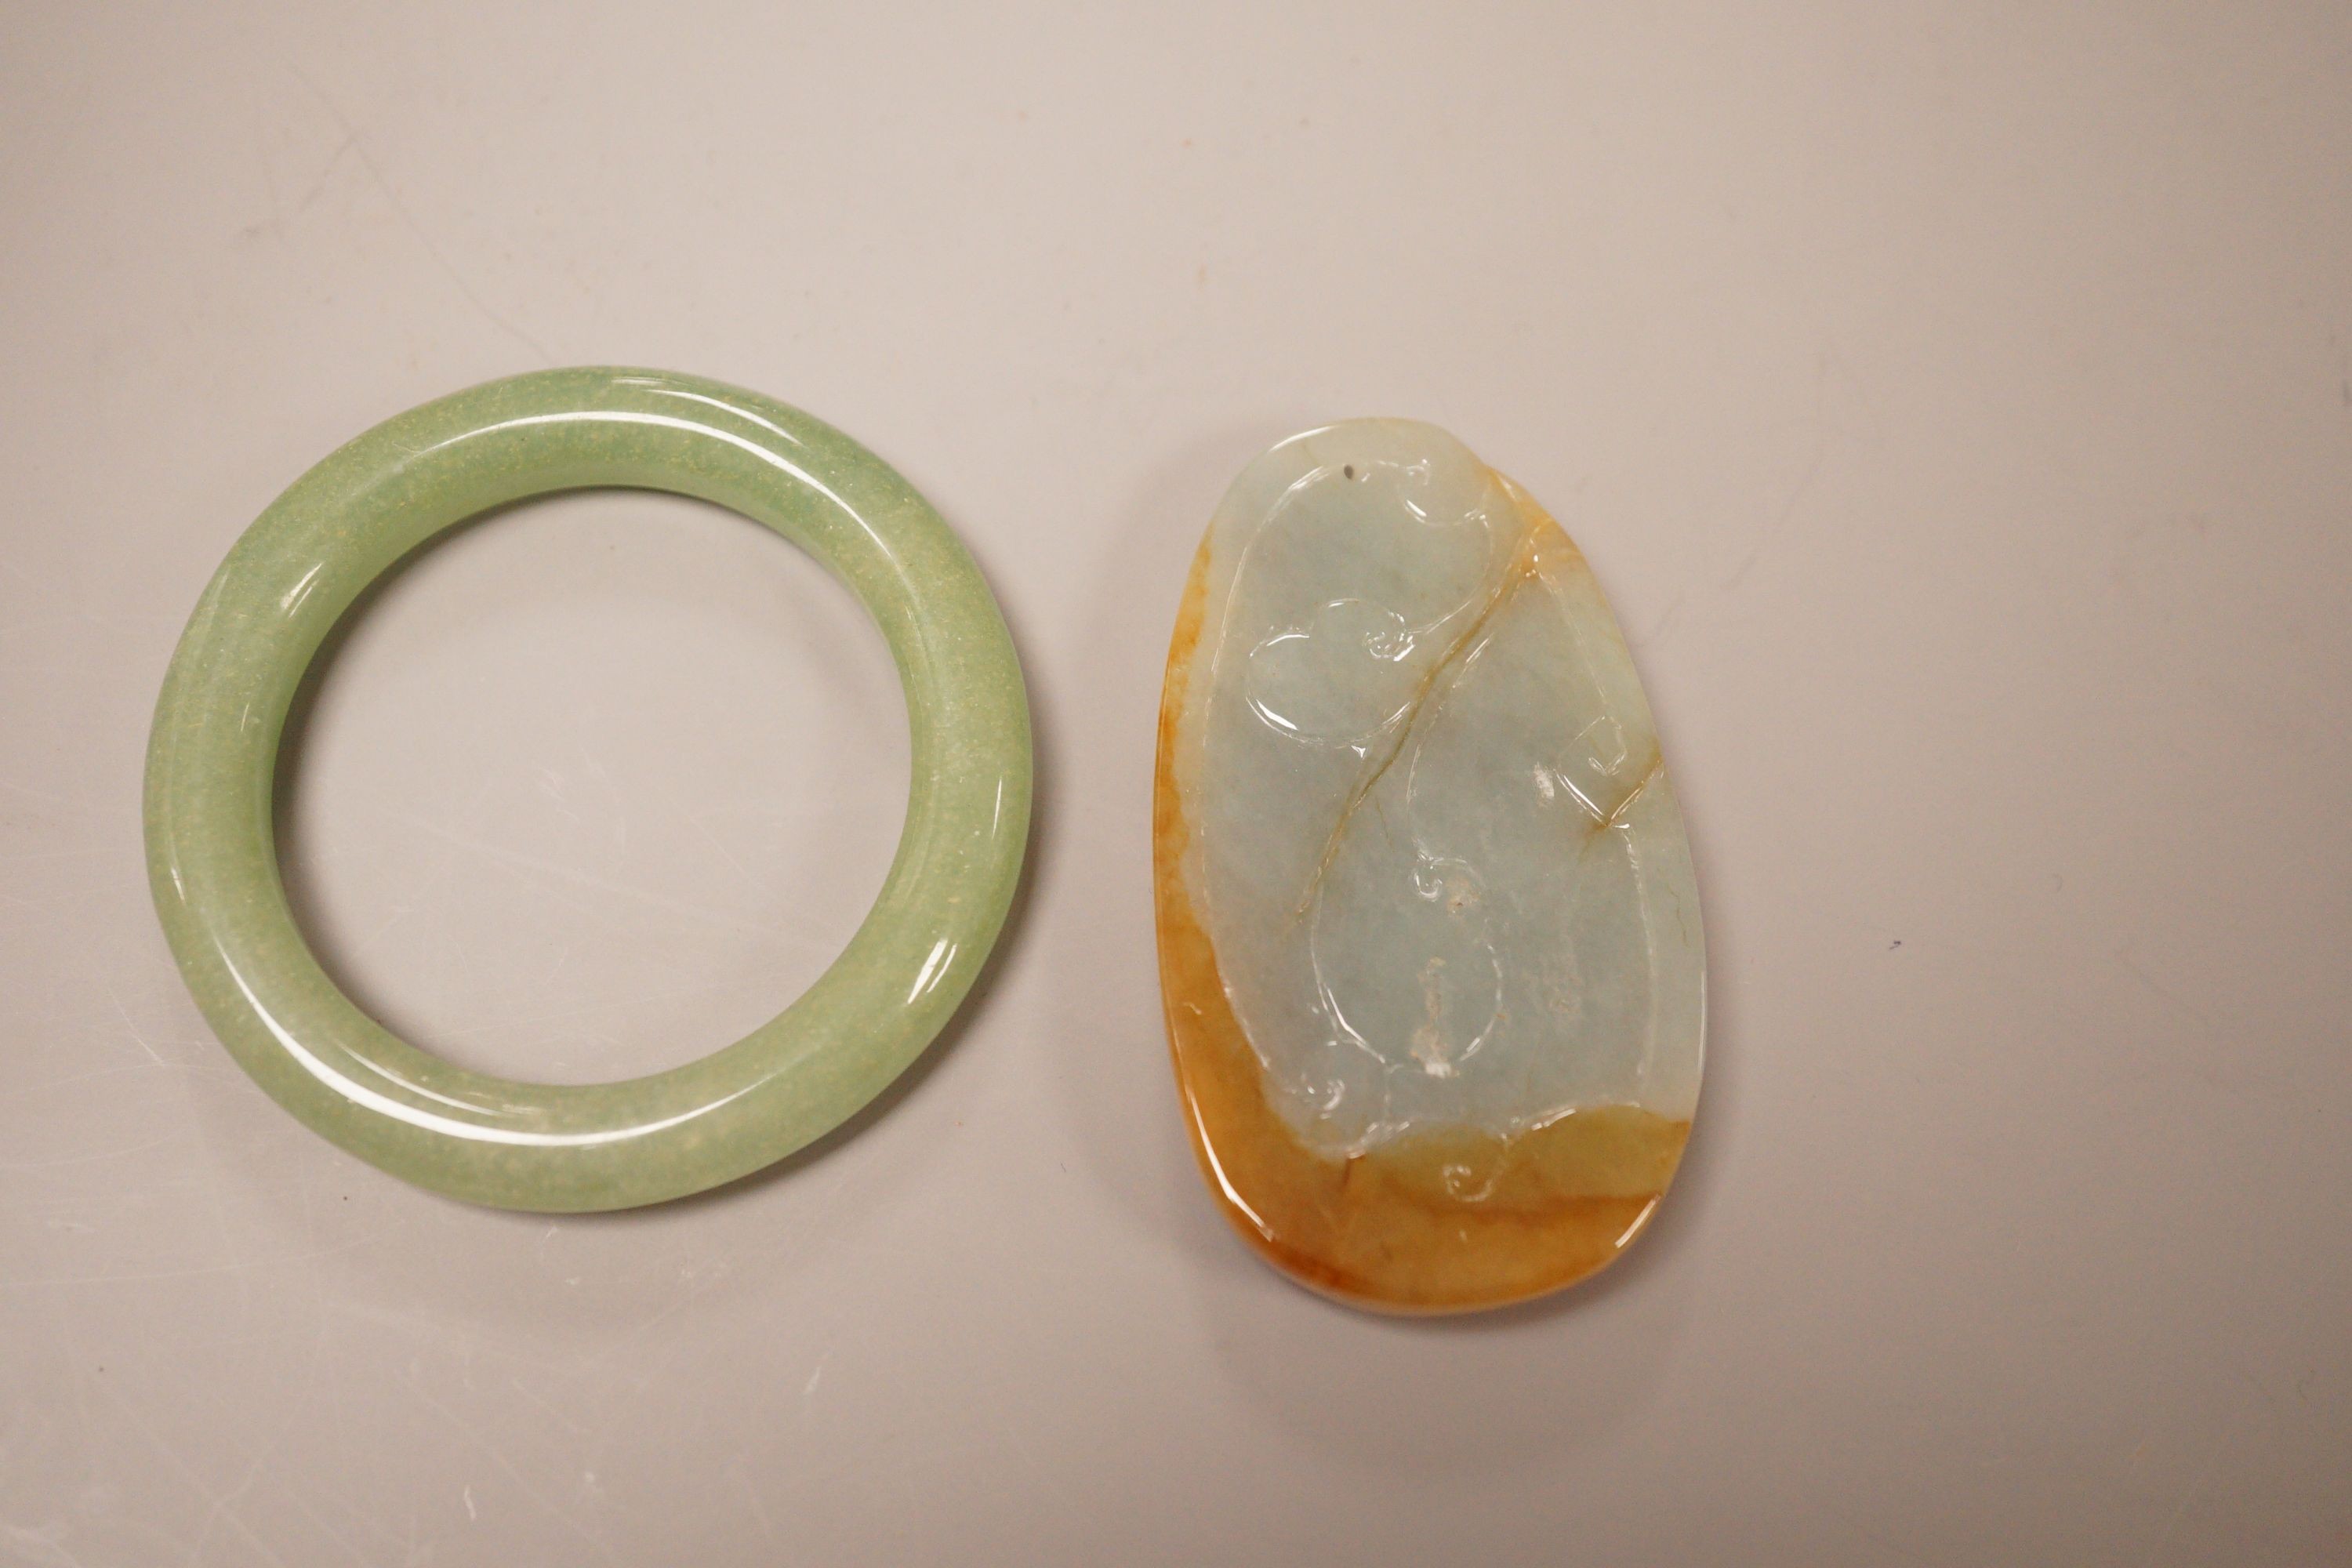 A Chinese jadeite plaque and an aventurine quartz bangle